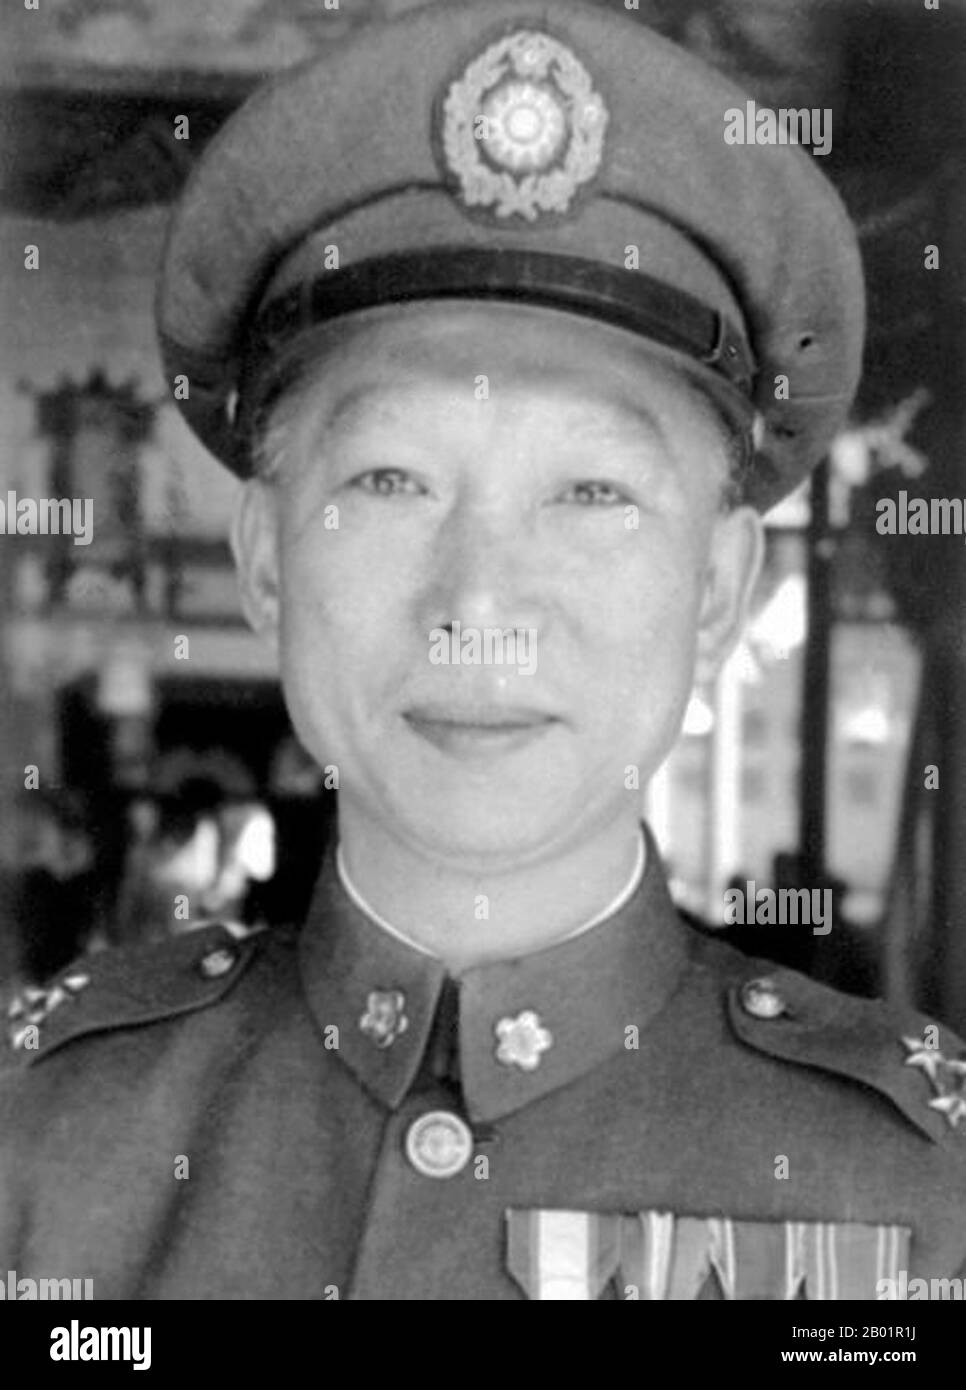 Taiwan/China: Xu Yue (26. Dezember 1896 bis 3. Mai 1998), chinesischer Nationalist General, um 1940er Jahre Xue Yue war ein chinesischer nationalistischer Militärgeneral, der von Claire Lee Chennault von den Flying Tigers als „Patton of Asia“ bezeichnet wurde. Als sich Chiang Kai-shek 1949 nach Taiwan zurückzog, wurde Xue für die Verteidigung der Insel Hainan verantwortlich gemacht. Die siegreiche Rote Armee war zu viel für die demoralisierten nationalistischen Kräfte. Xue reiste nach Taiwan, nachdem die Verteidigung der Insel Hainan zusammenbrach. Er diente als Nominalberater des Stabschefs nur im Namen. Er lebte bis 1998 bis zum Alter von 101 Jahren. Stockfoto